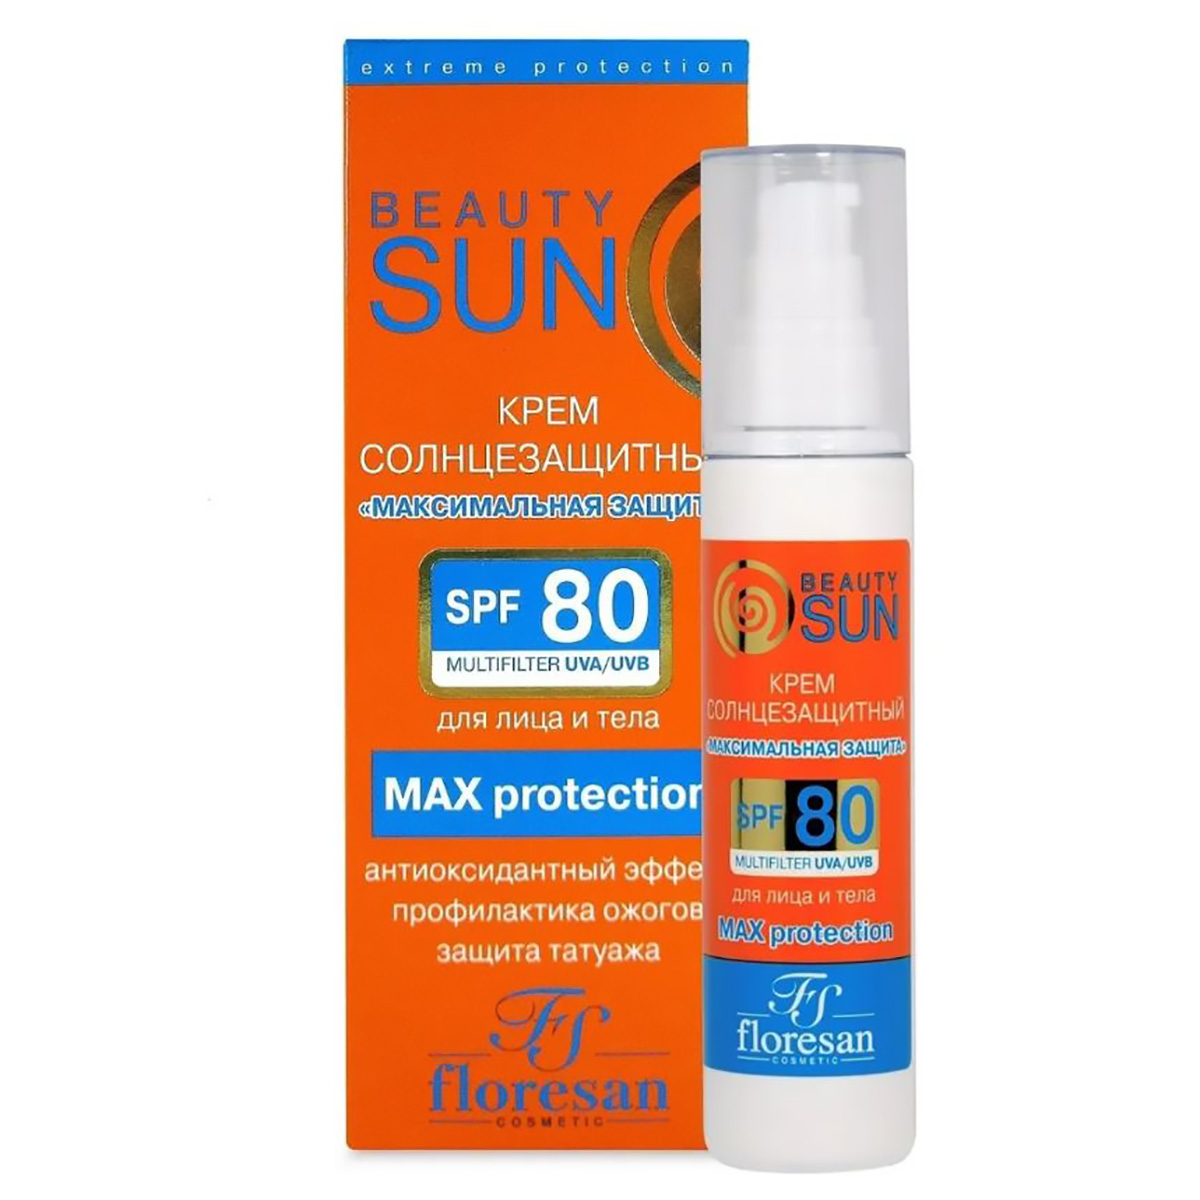 Крем солнцезащитный Максимальная защита, SPF80, Beauty Sun, 75 мл, FLORESAN